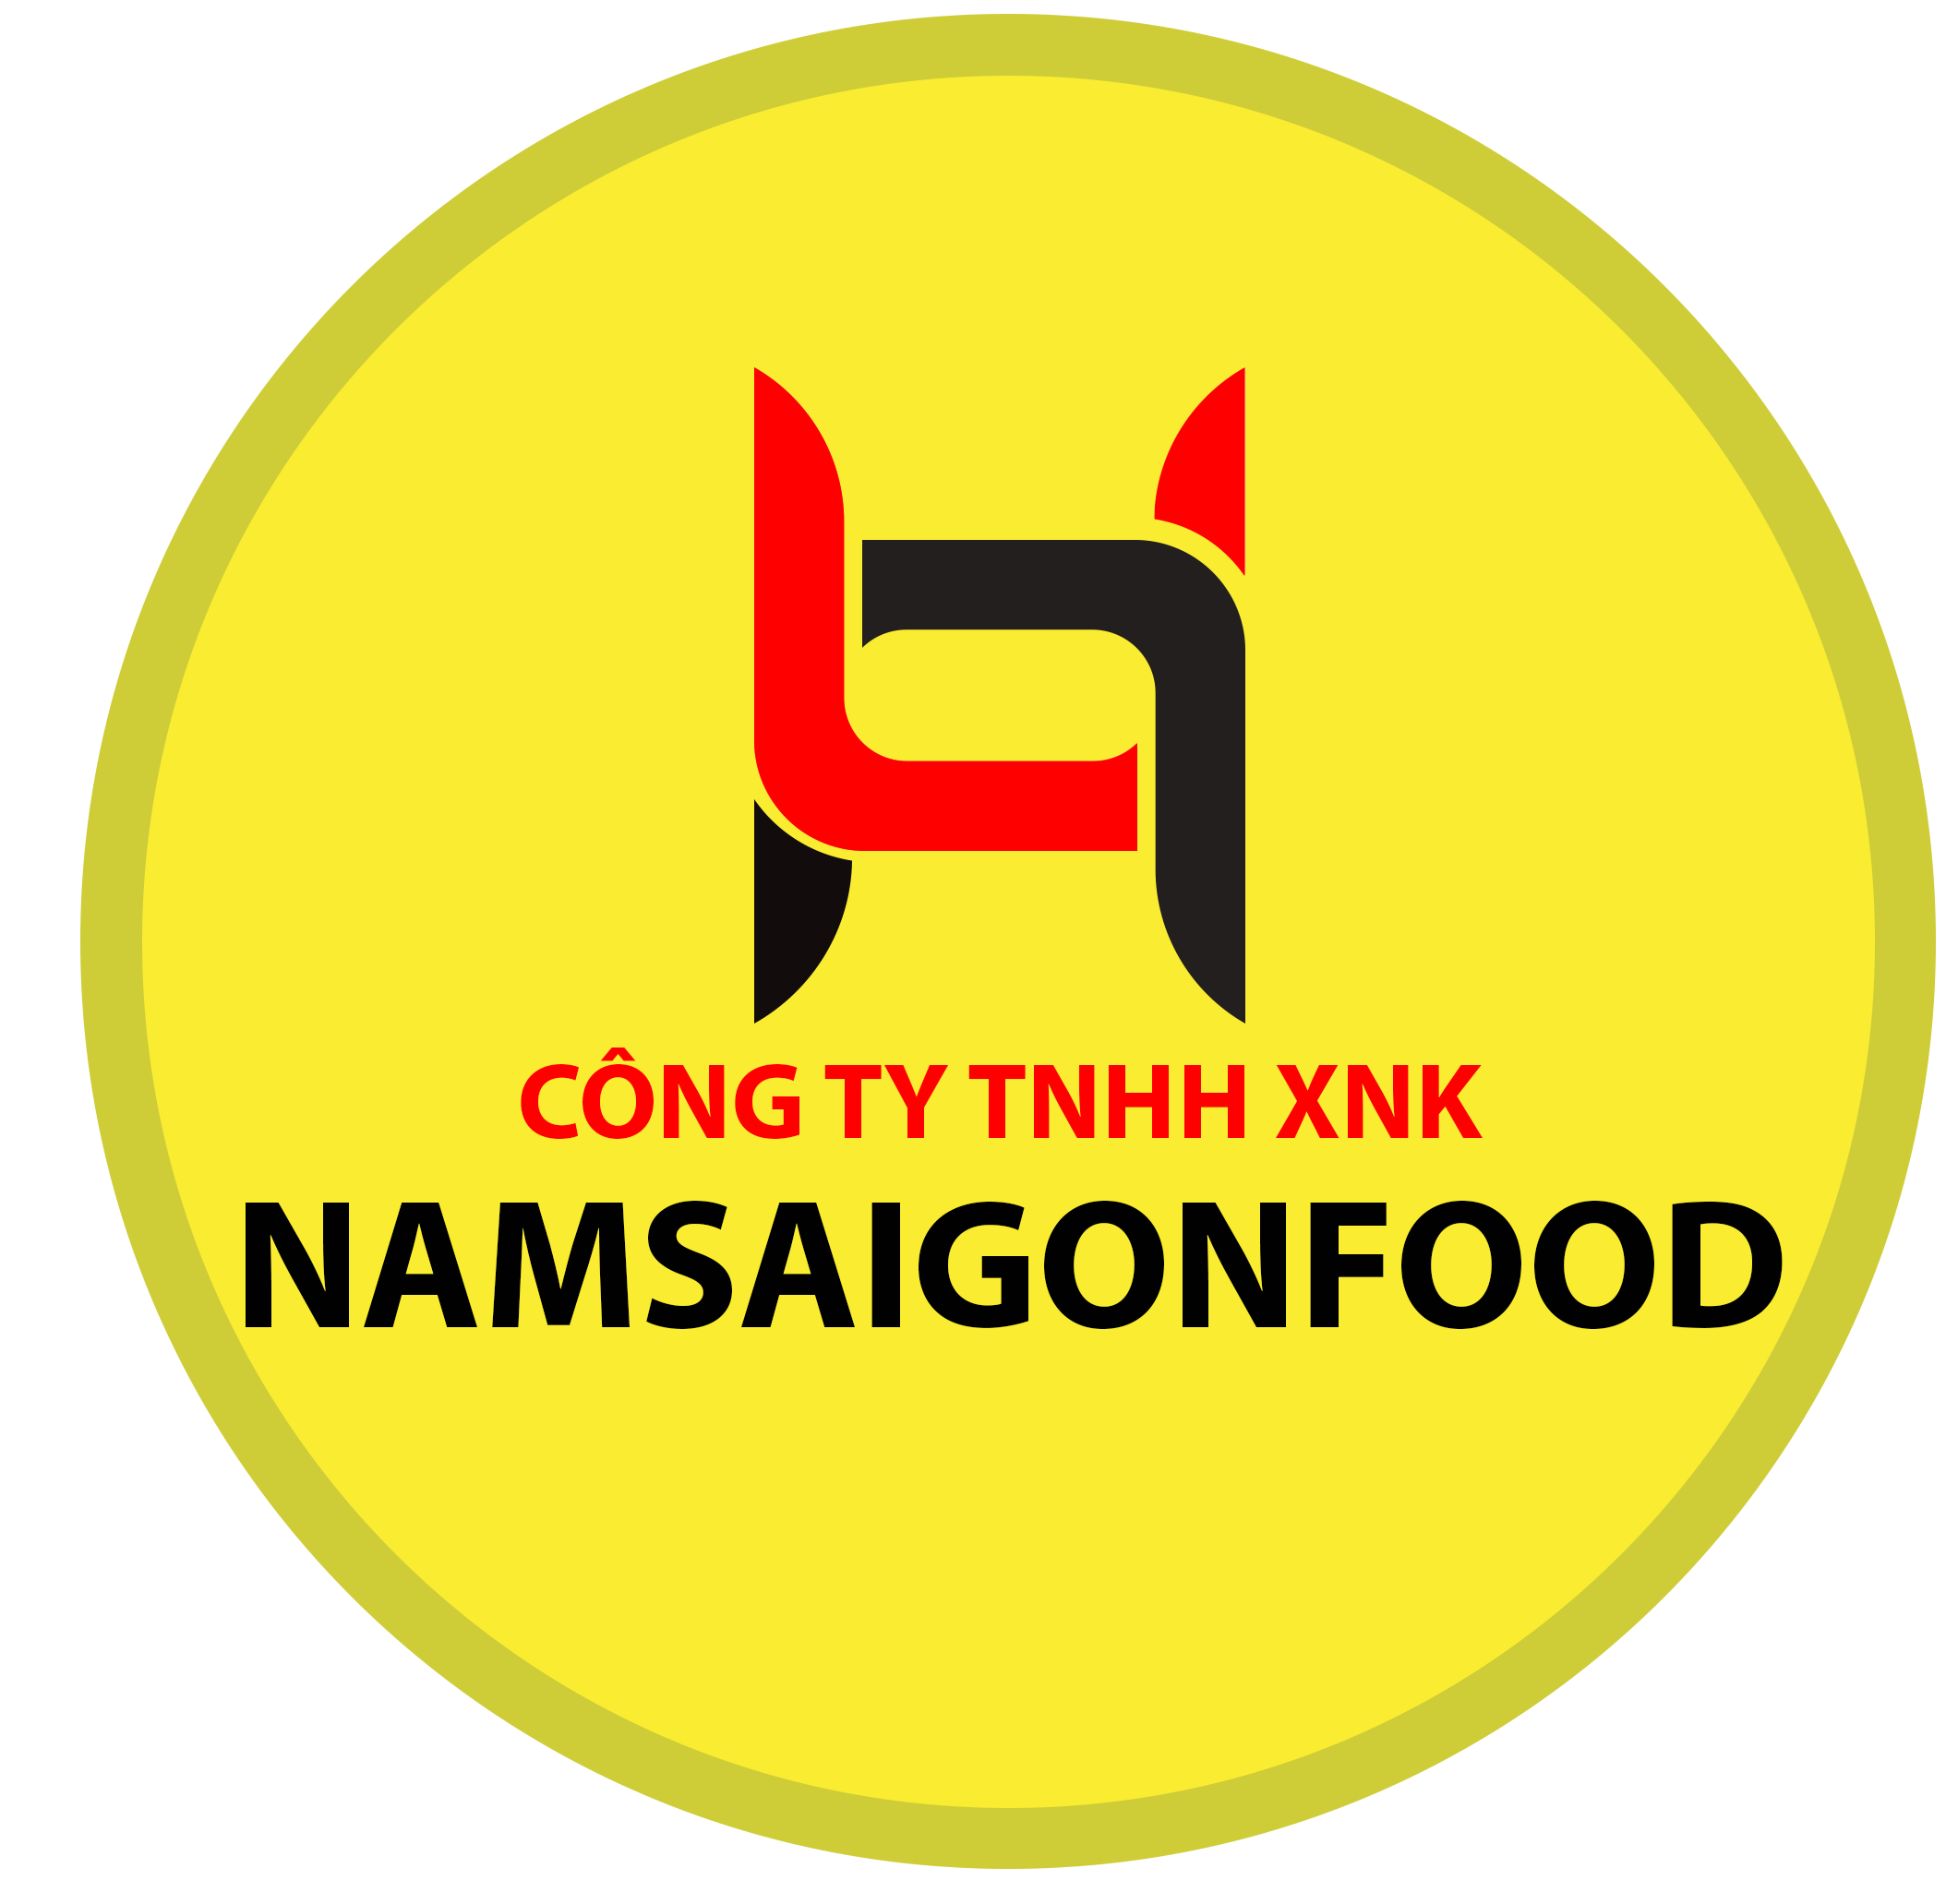 Www.Namsaigonfood.com